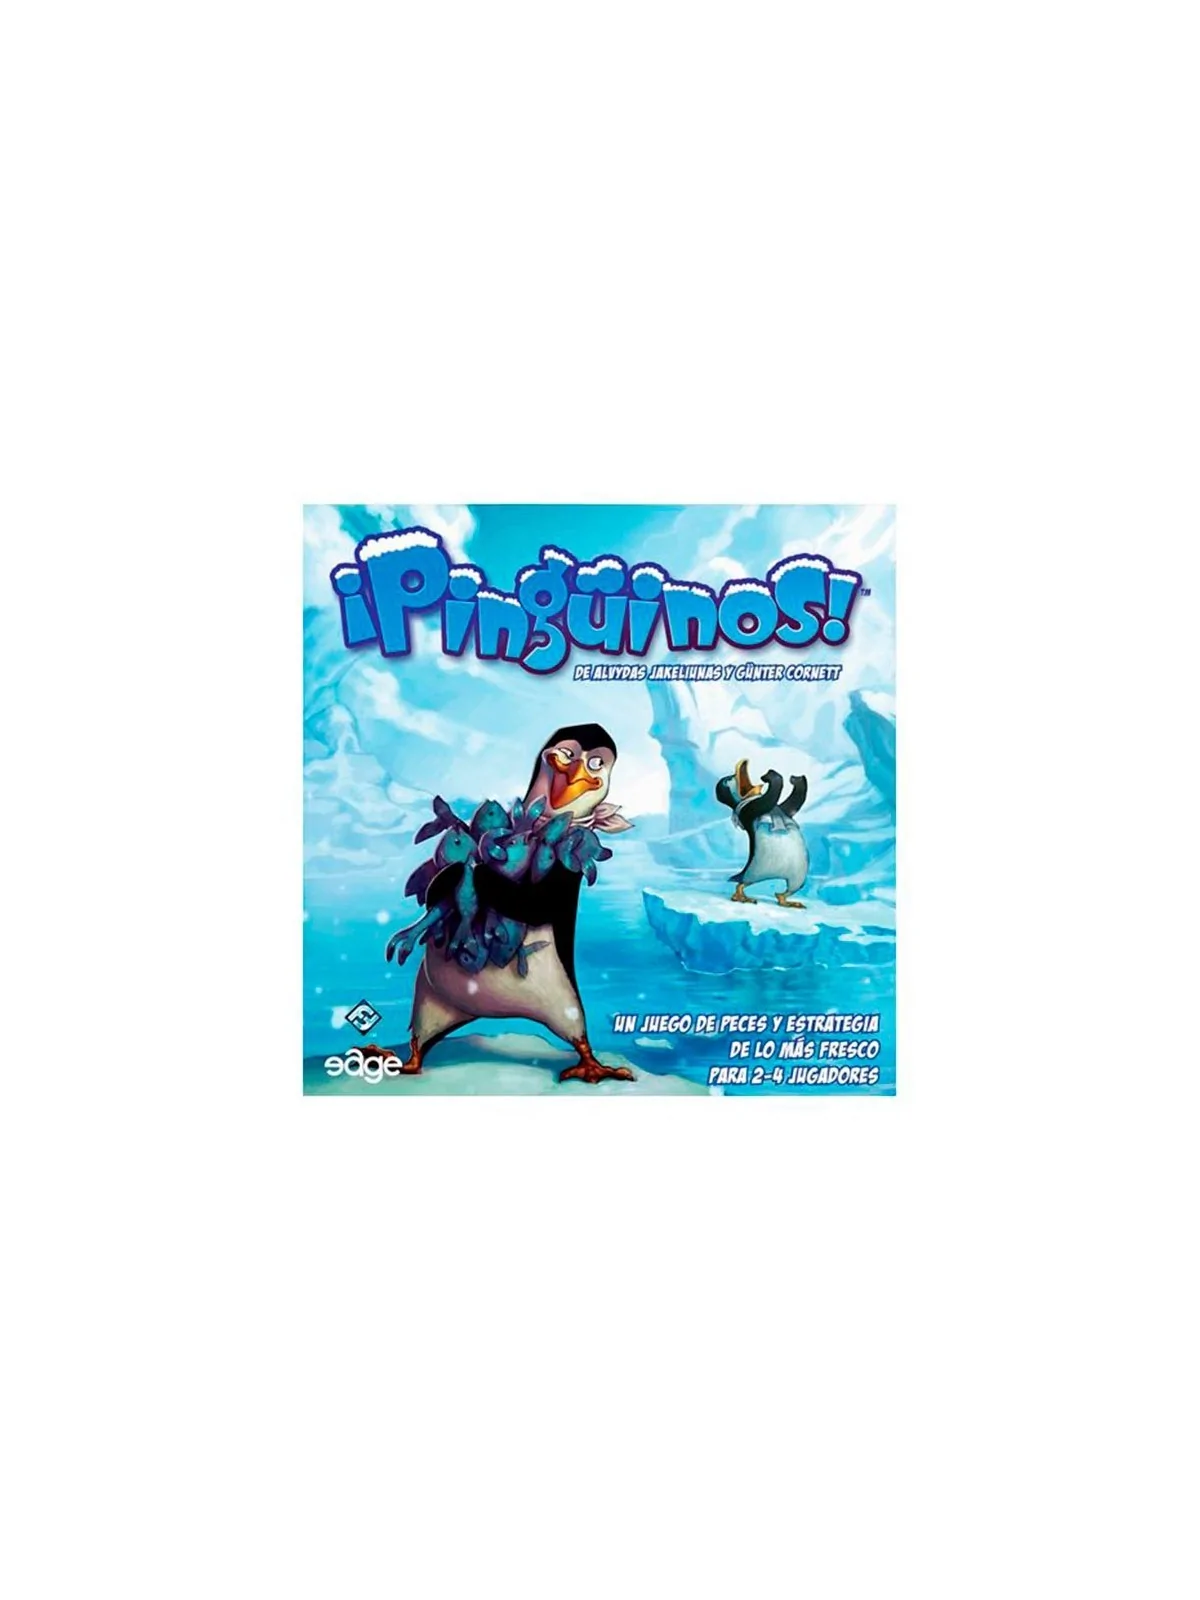 Comprar ¡Pingüinos! barato al mejor precio 13,49 € de Fantasy Flight G